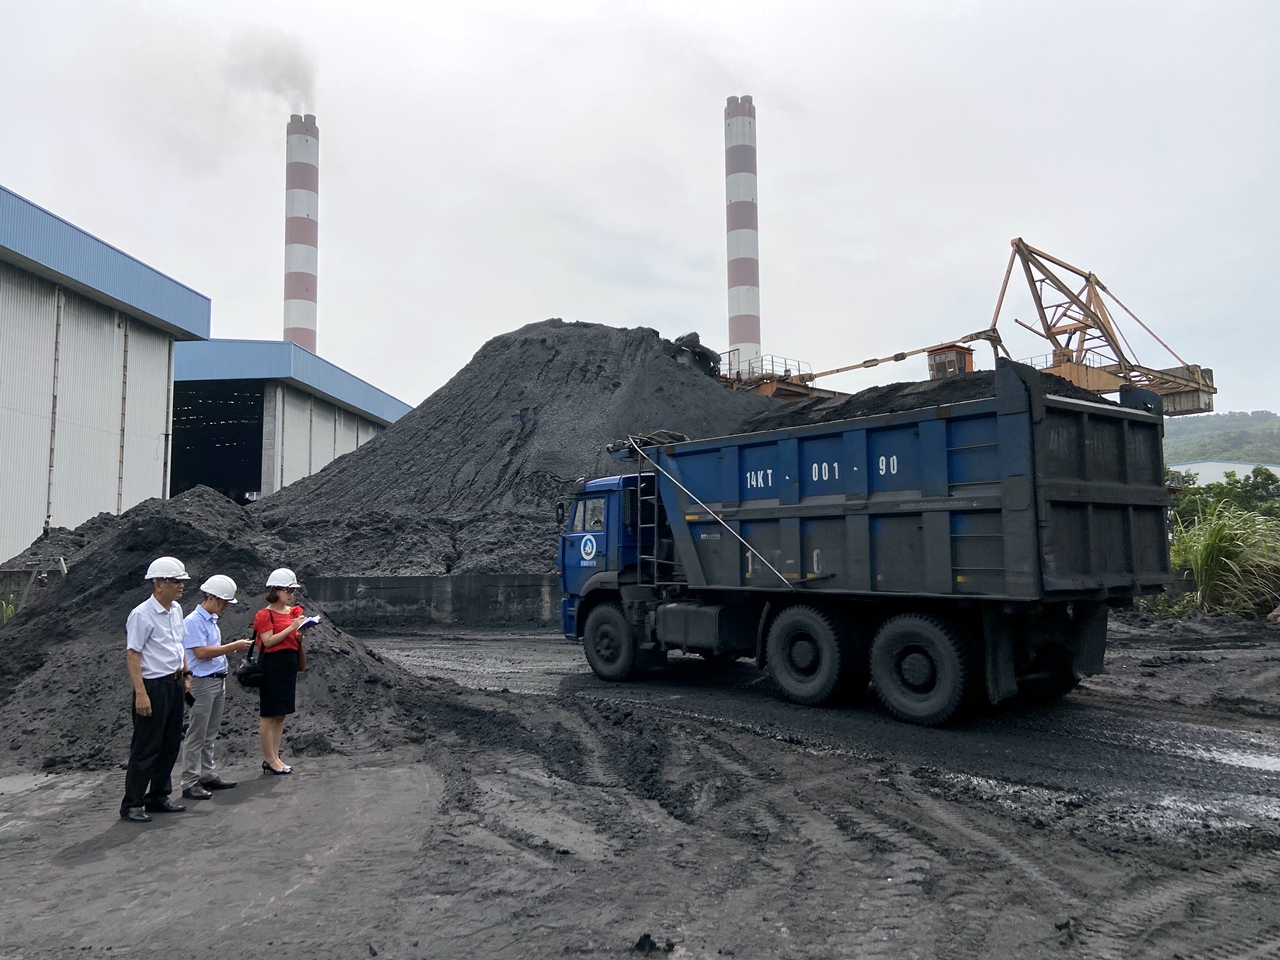  Hiện các khu vực chứa than của Công ty CP Nhiệt điện Quảng Ninh được cấp đầy, đảm bảo không để các tổ máy phải dừng hoạt động.